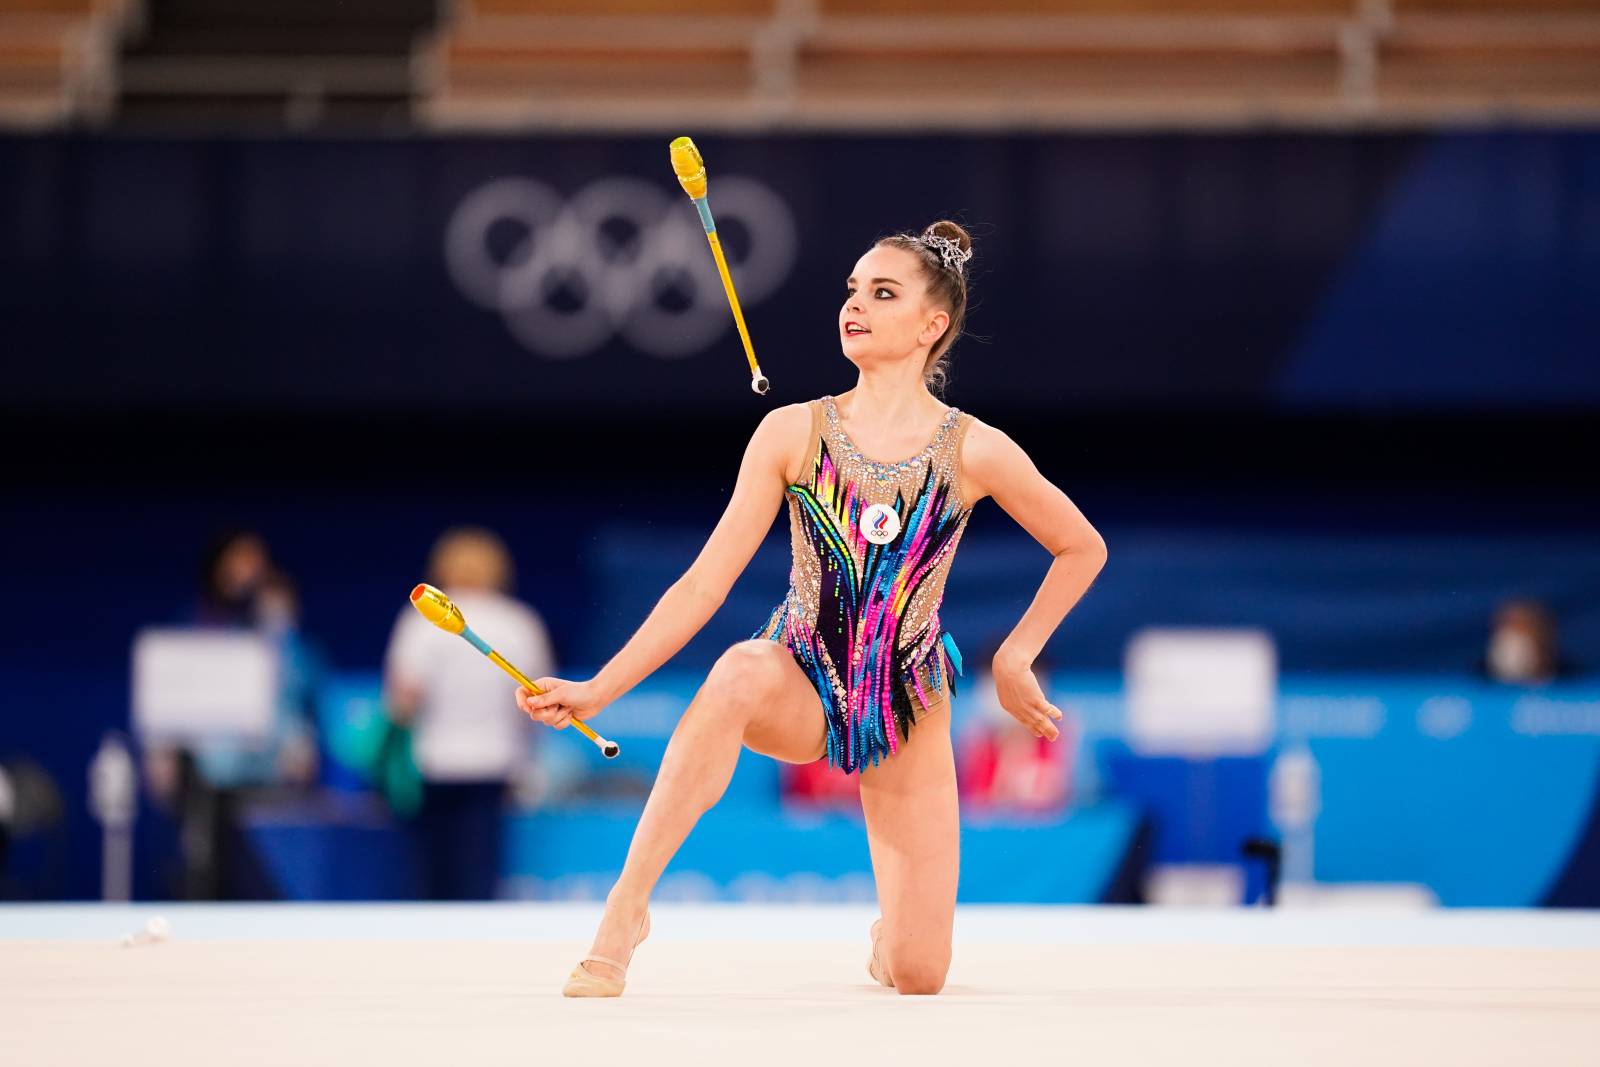 В МОК отказались реагировать на скандальное судейство в художественной гимнастике на Играх в Токио